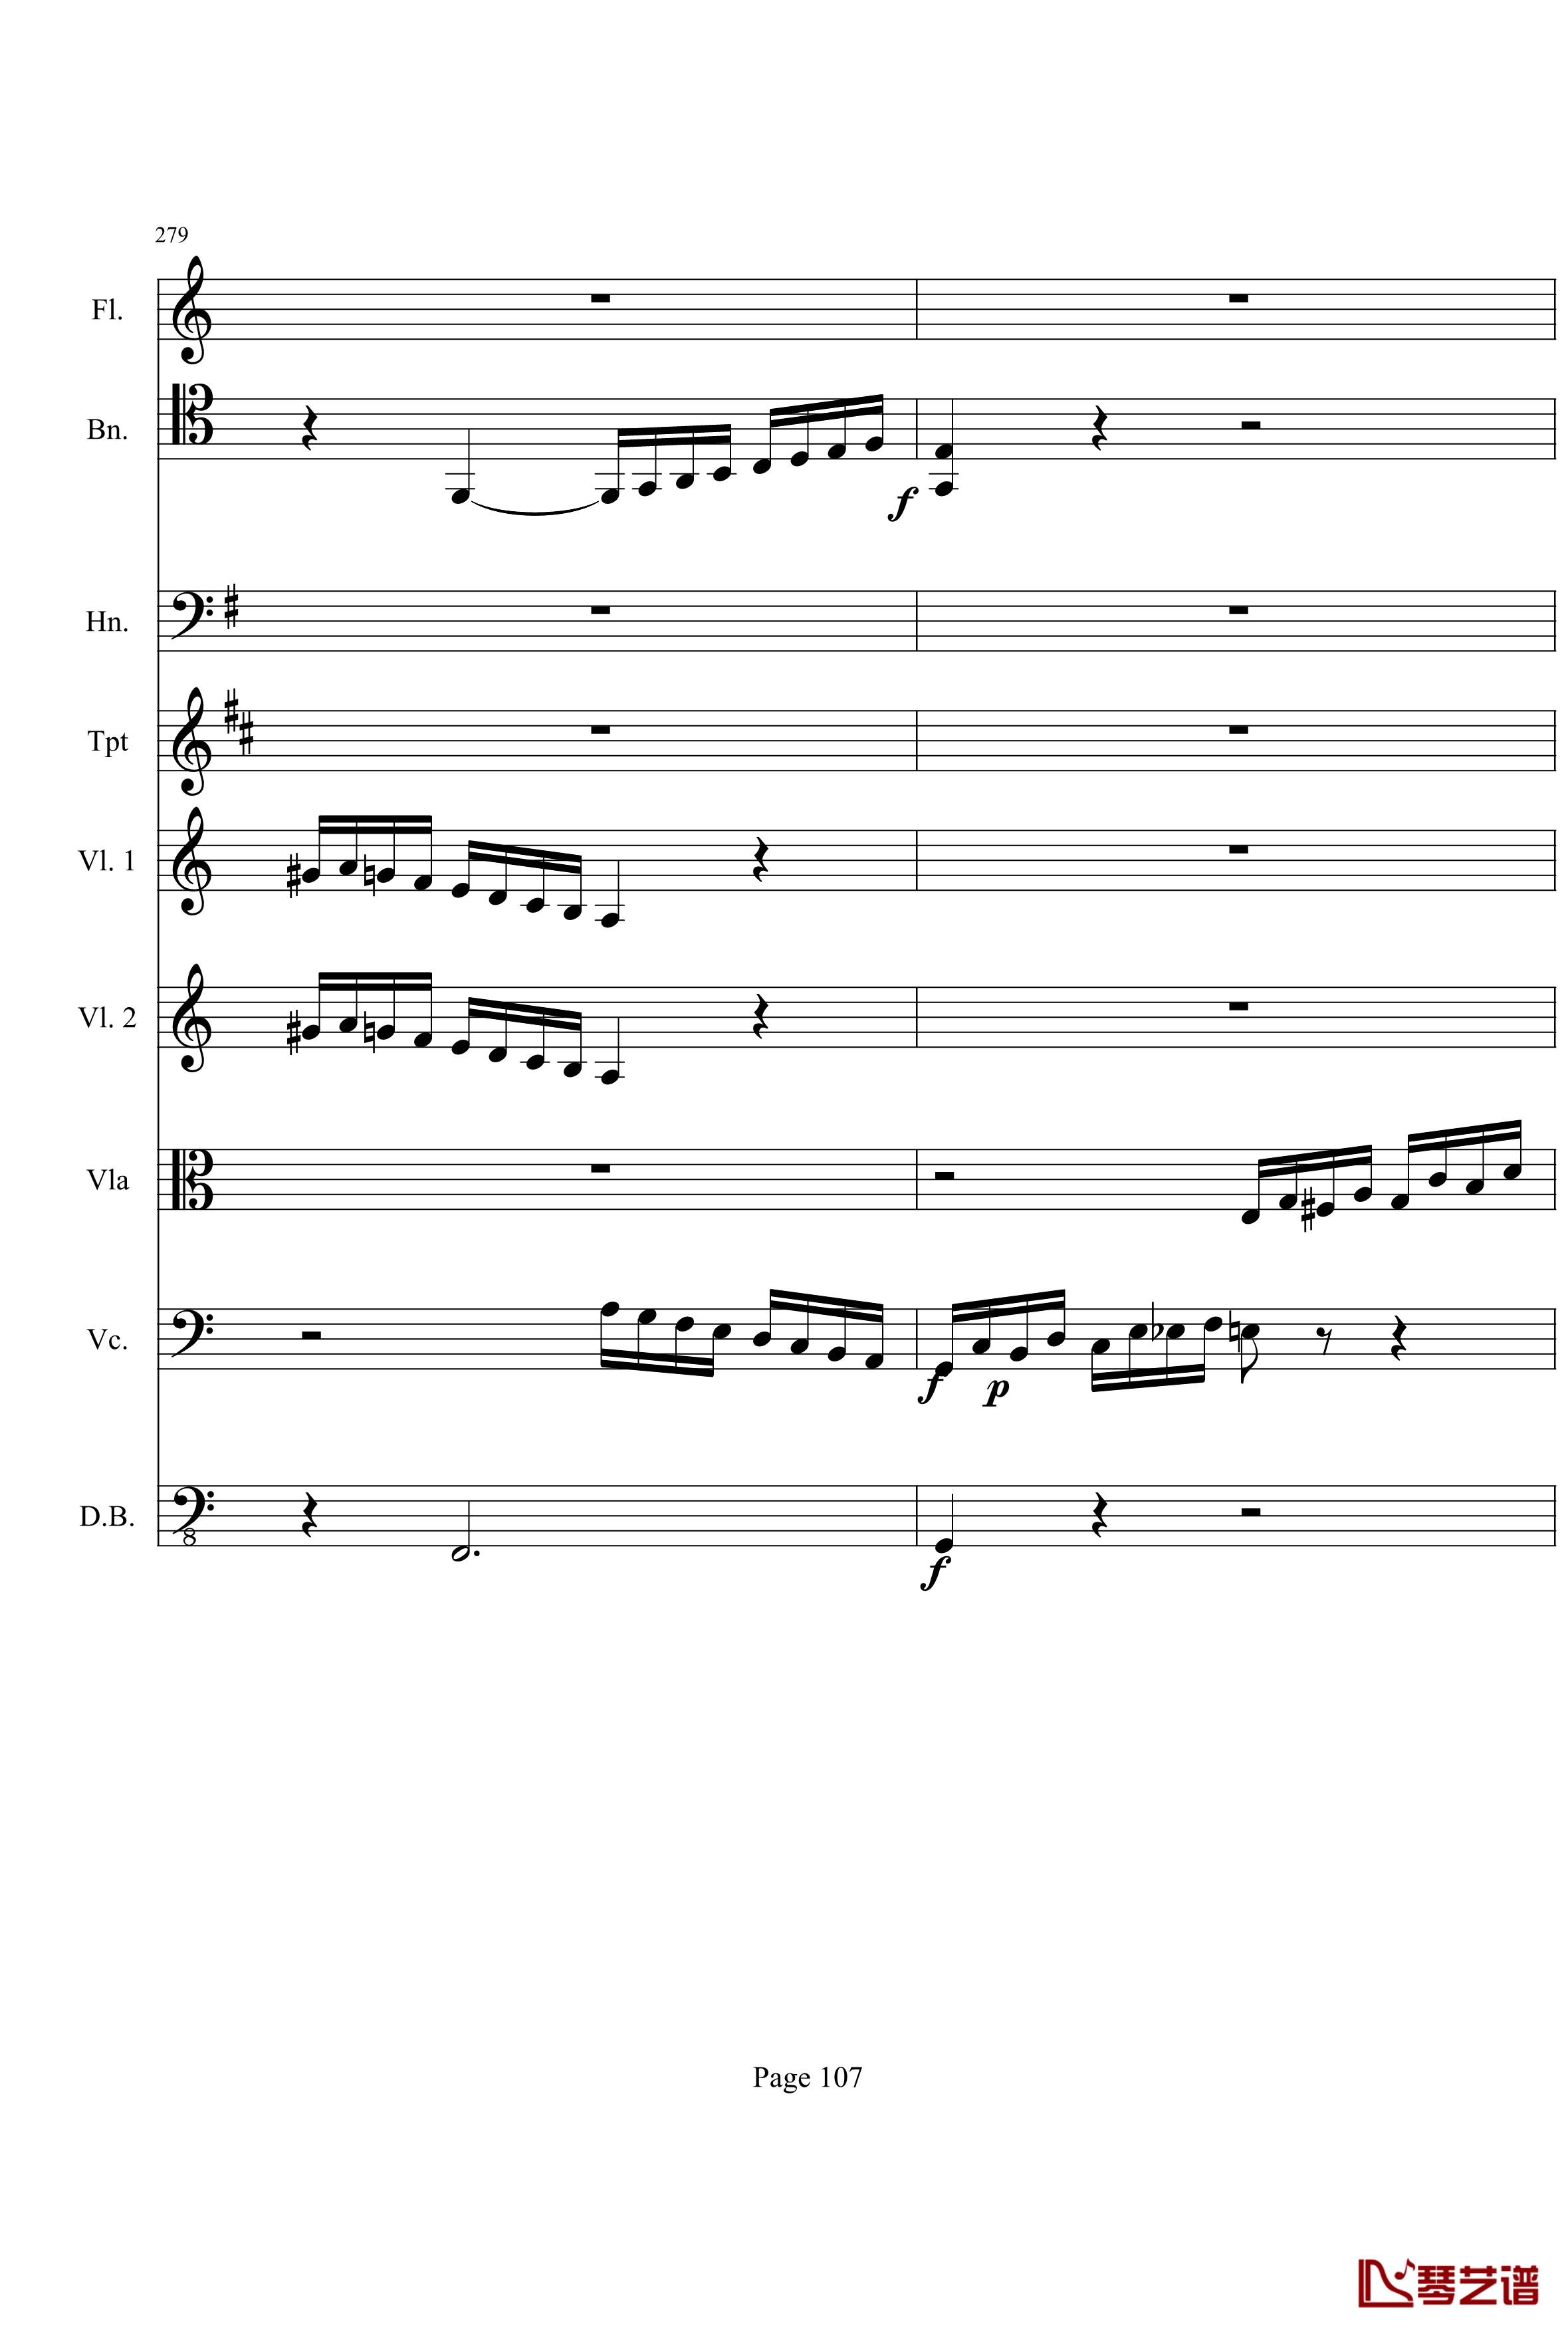 奏鸣曲之交响钢琴谱-第21-Ⅰ-贝多芬-beethoven107